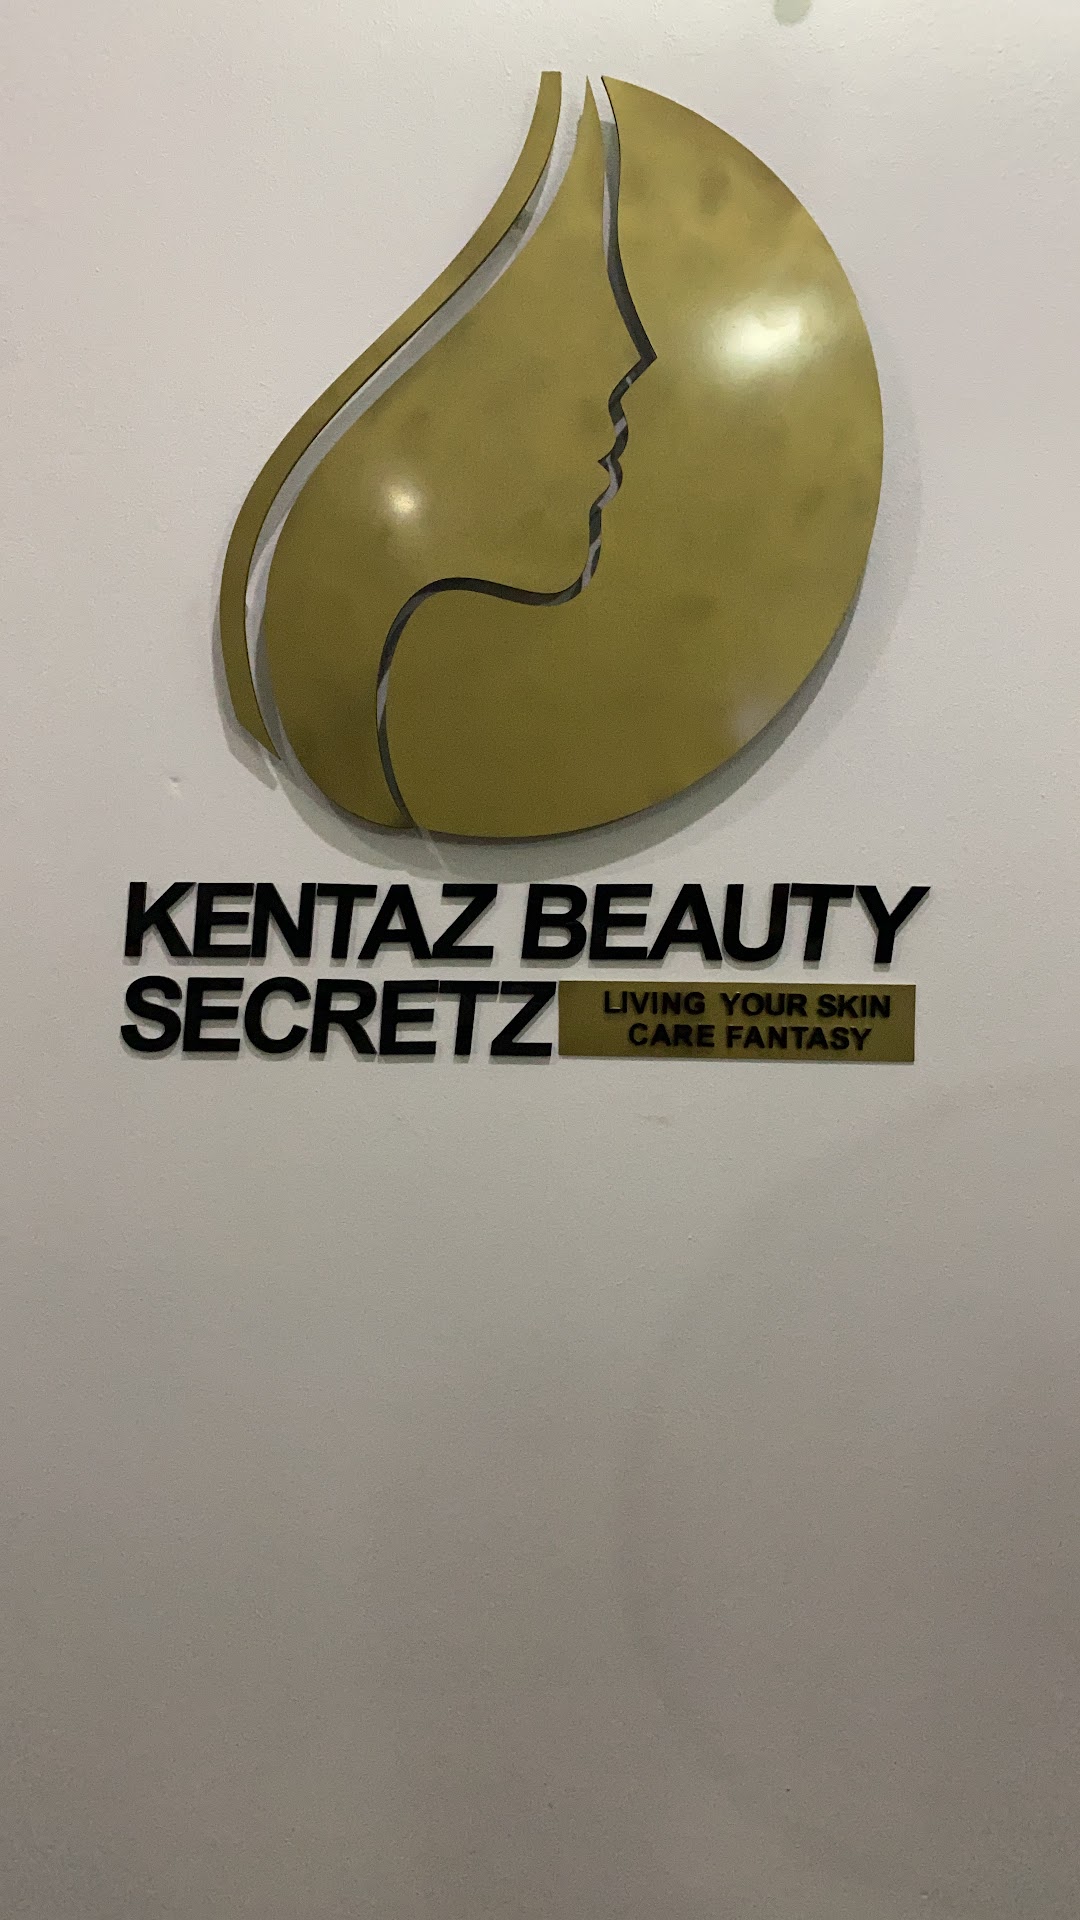 Kentaz Beauty Secretz